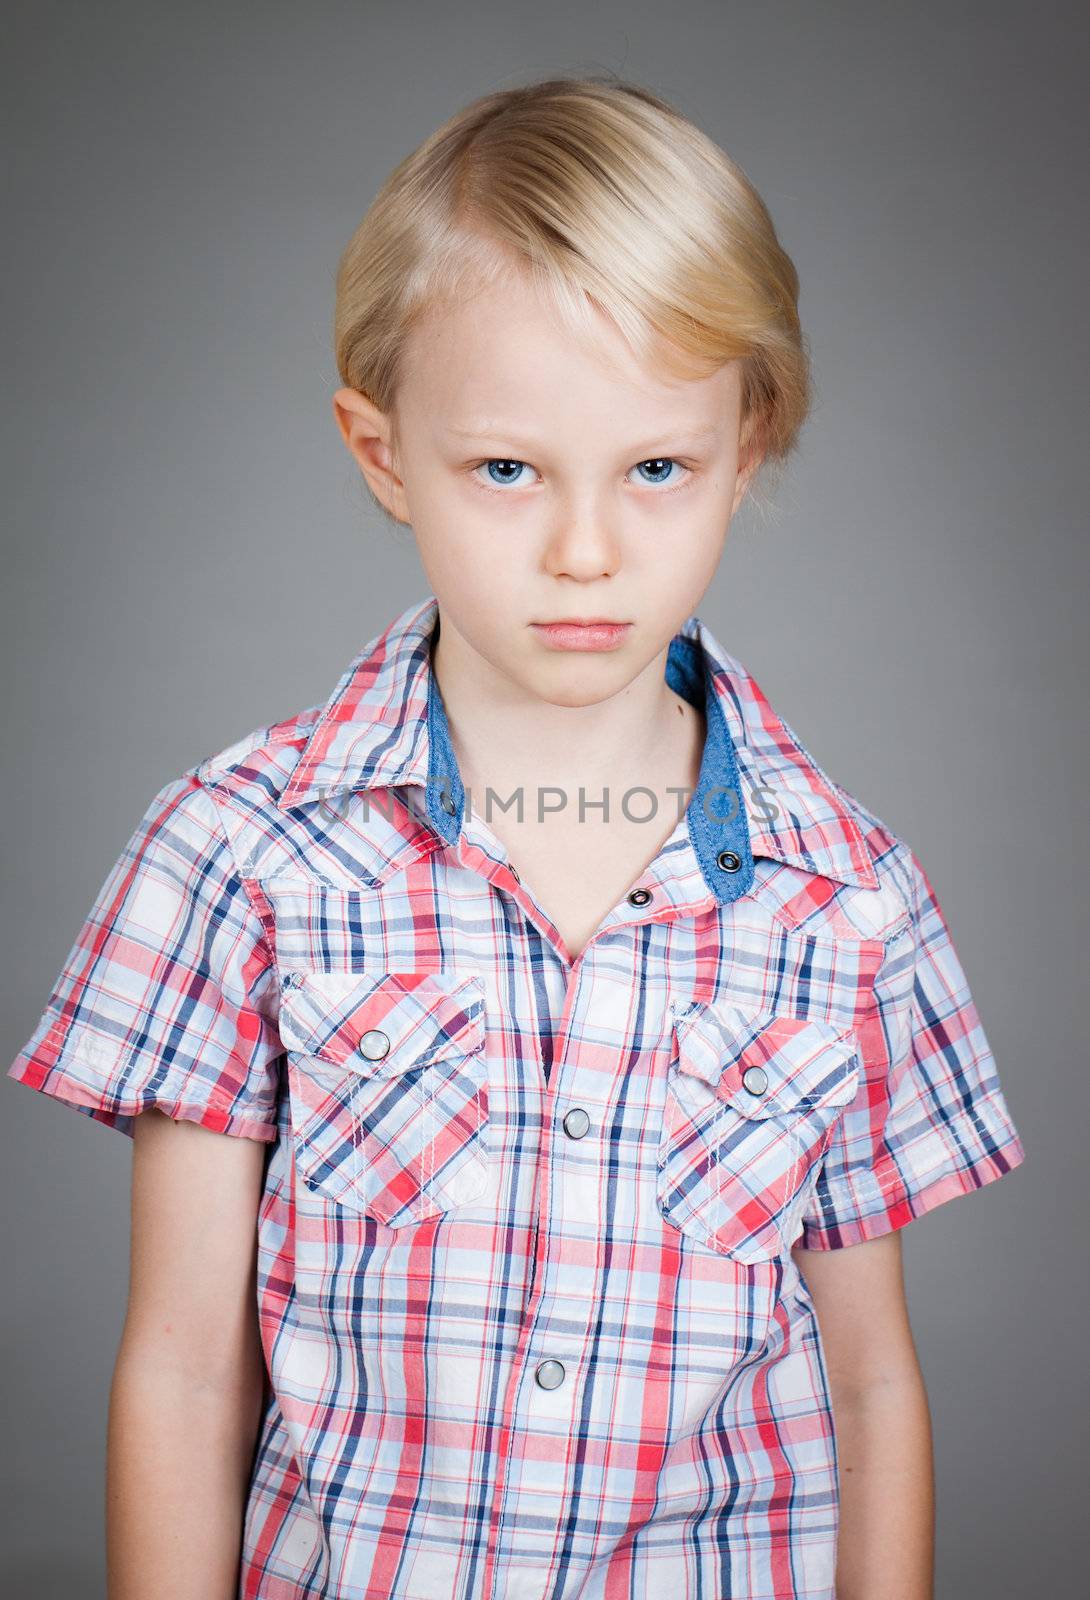 Sad grumpy young boy by Jaykayl